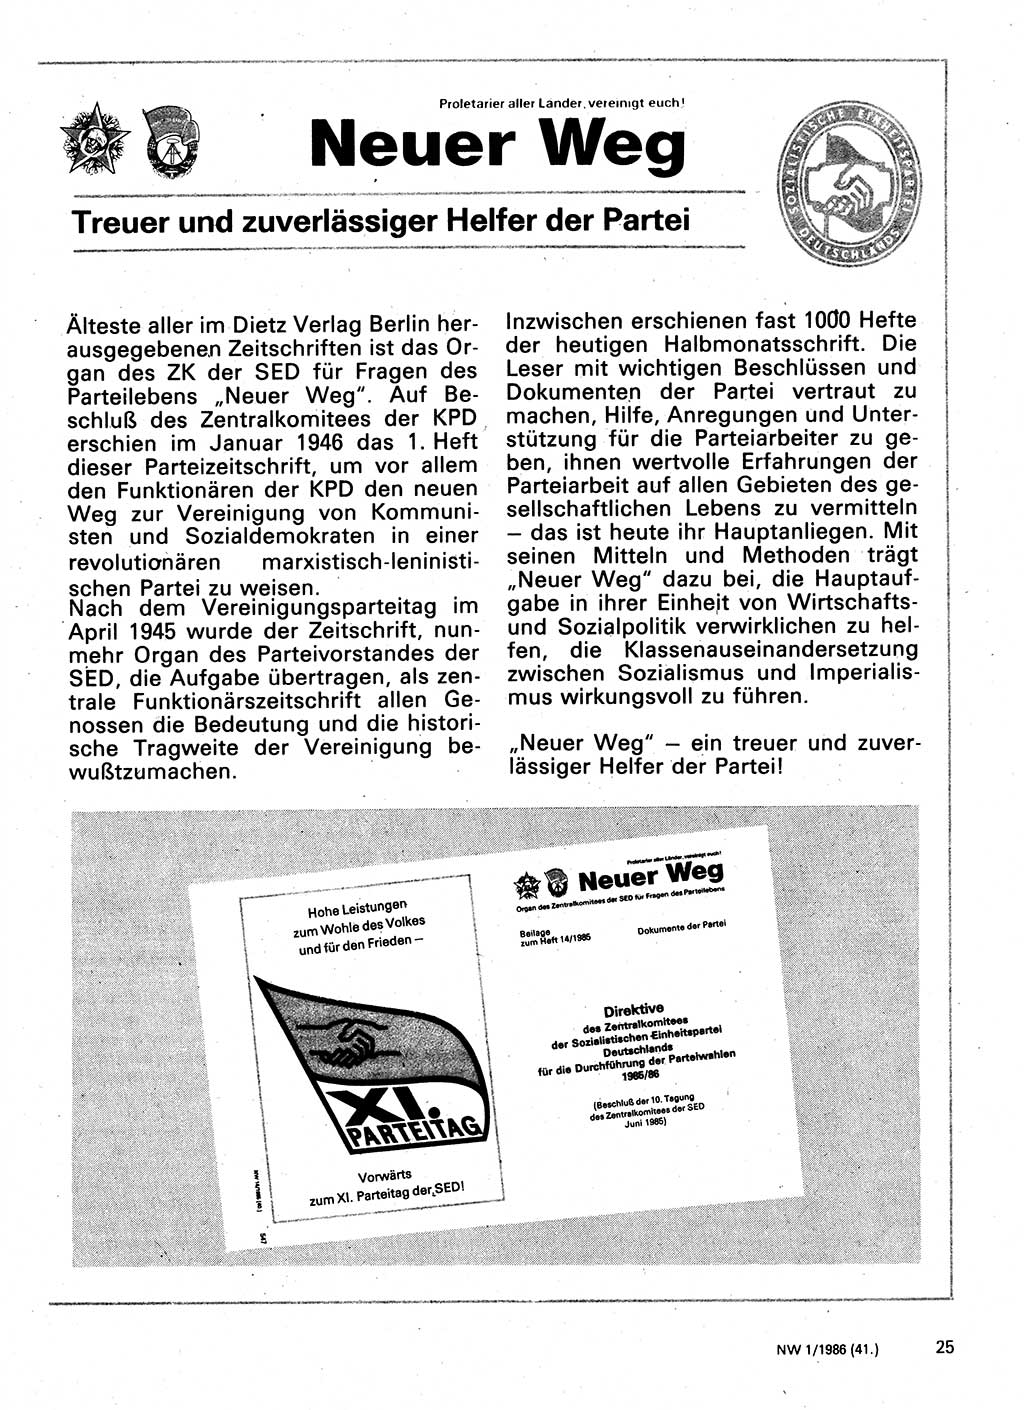 Neuer Weg (NW), Organ des Zentralkomitees (ZK) der SED (Sozialistische Einheitspartei Deutschlands) für Fragen des Parteilebens, 41. Jahrgang [Deutsche Demokratische Republik (DDR)] 1986, Seite 25 (NW ZK SED DDR 1986, S. 25)